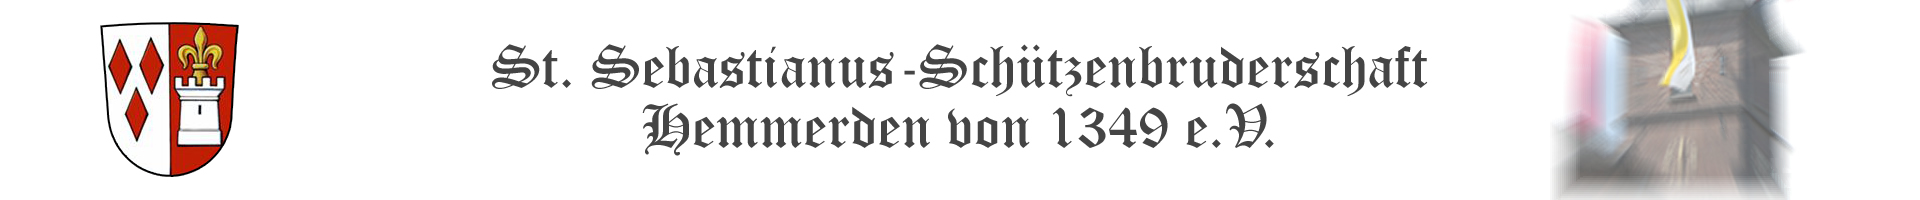 St. Sebastianus-Schützenbruderschaft Hemmerden 1349 e.V.